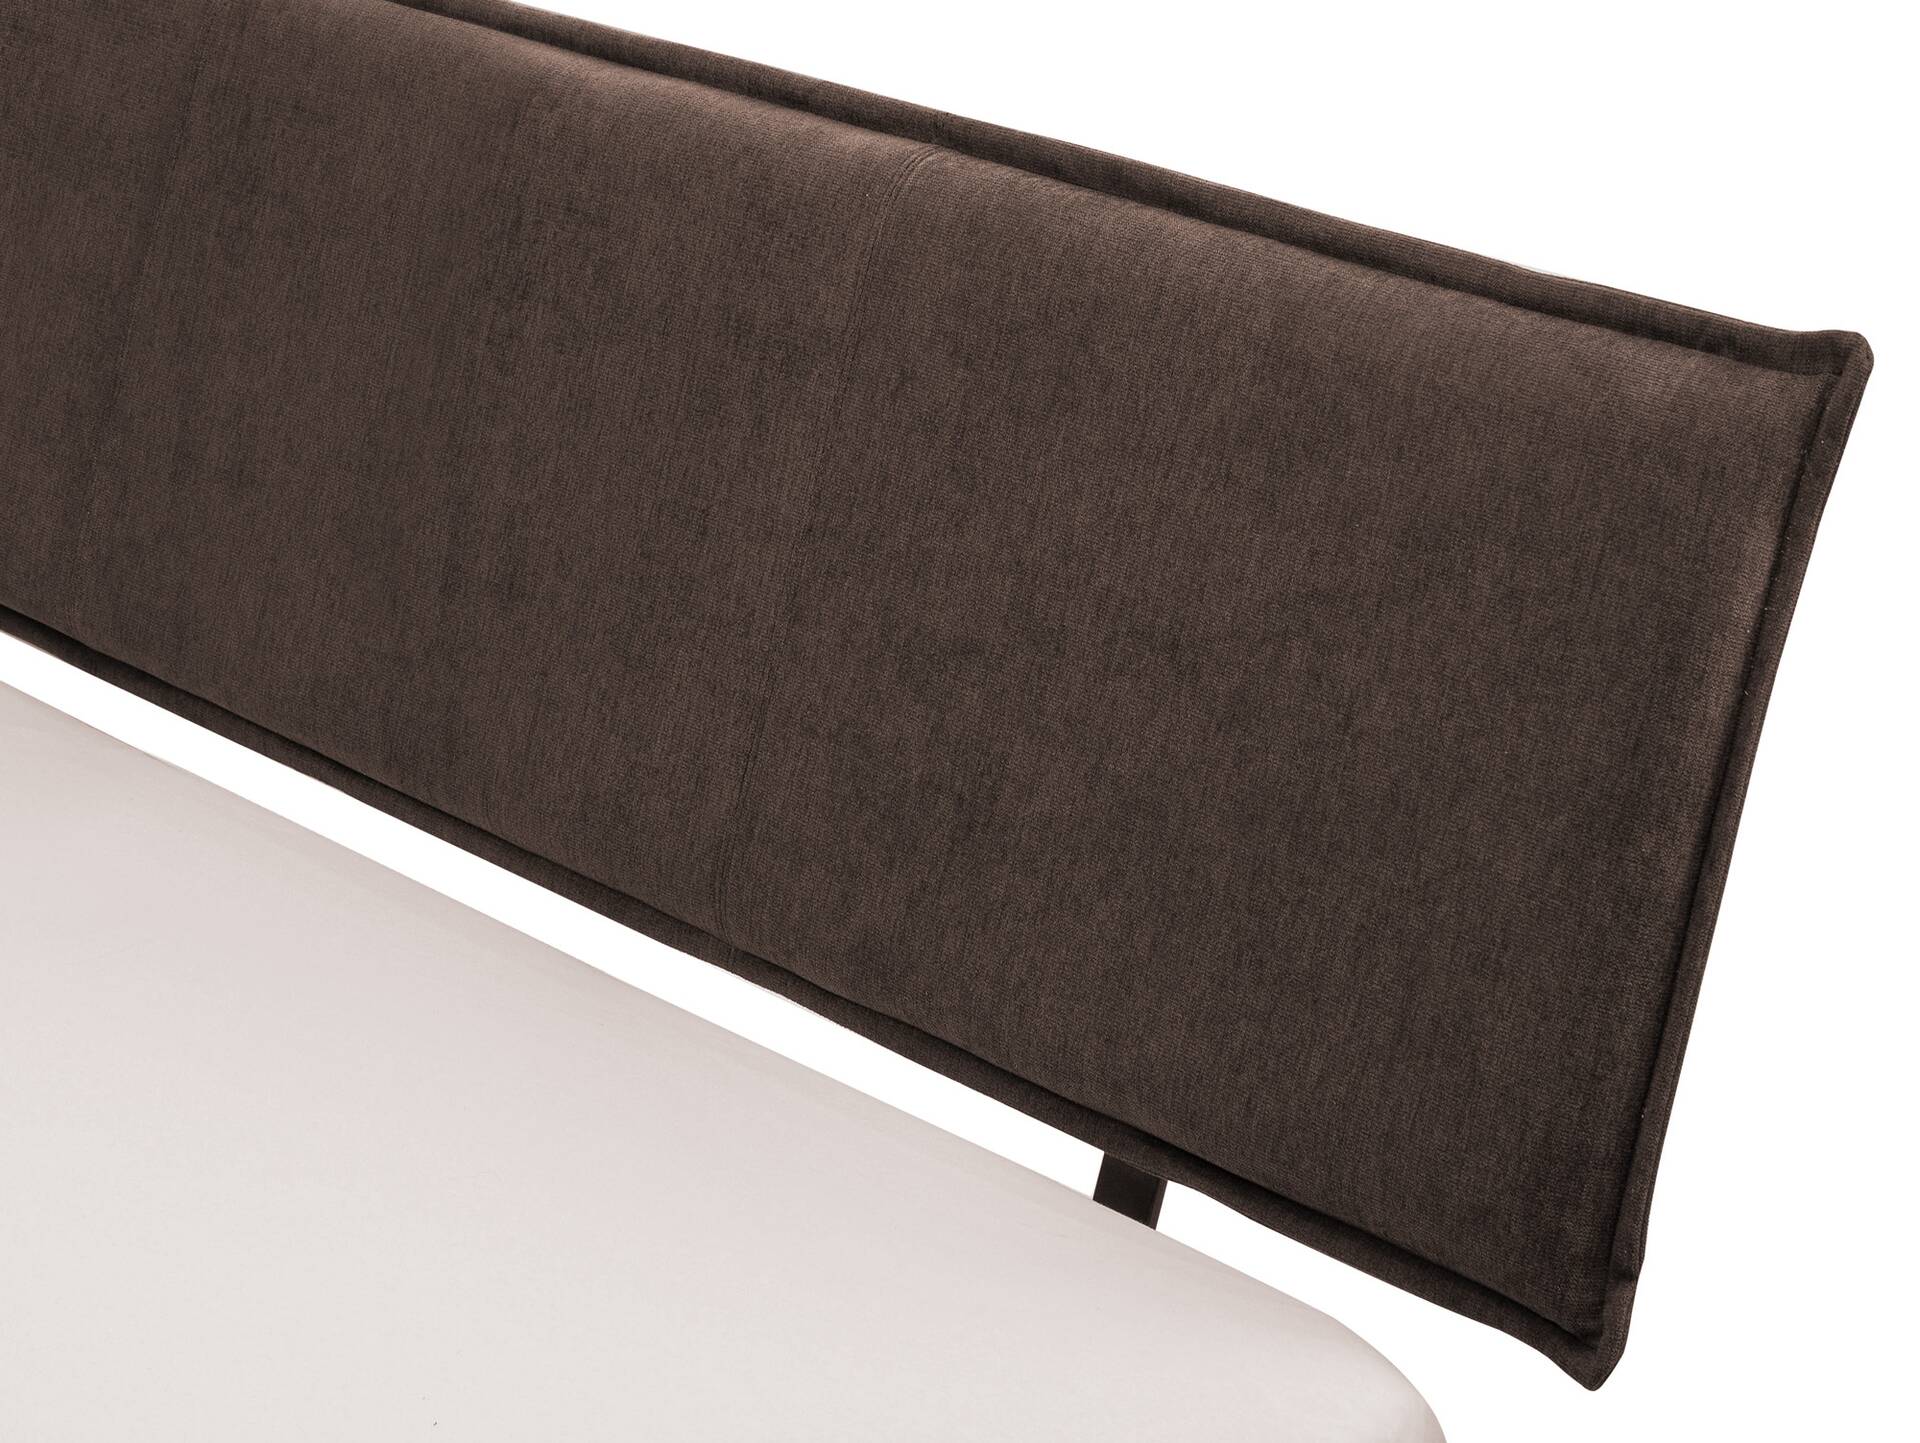 CORDINO 4-Fuß-Bett aus Eiche mit Polster-Kopfteil, Material Massivholz 160 x 200 cm | Eiche lackiert | Stoff Braun | gebürstet